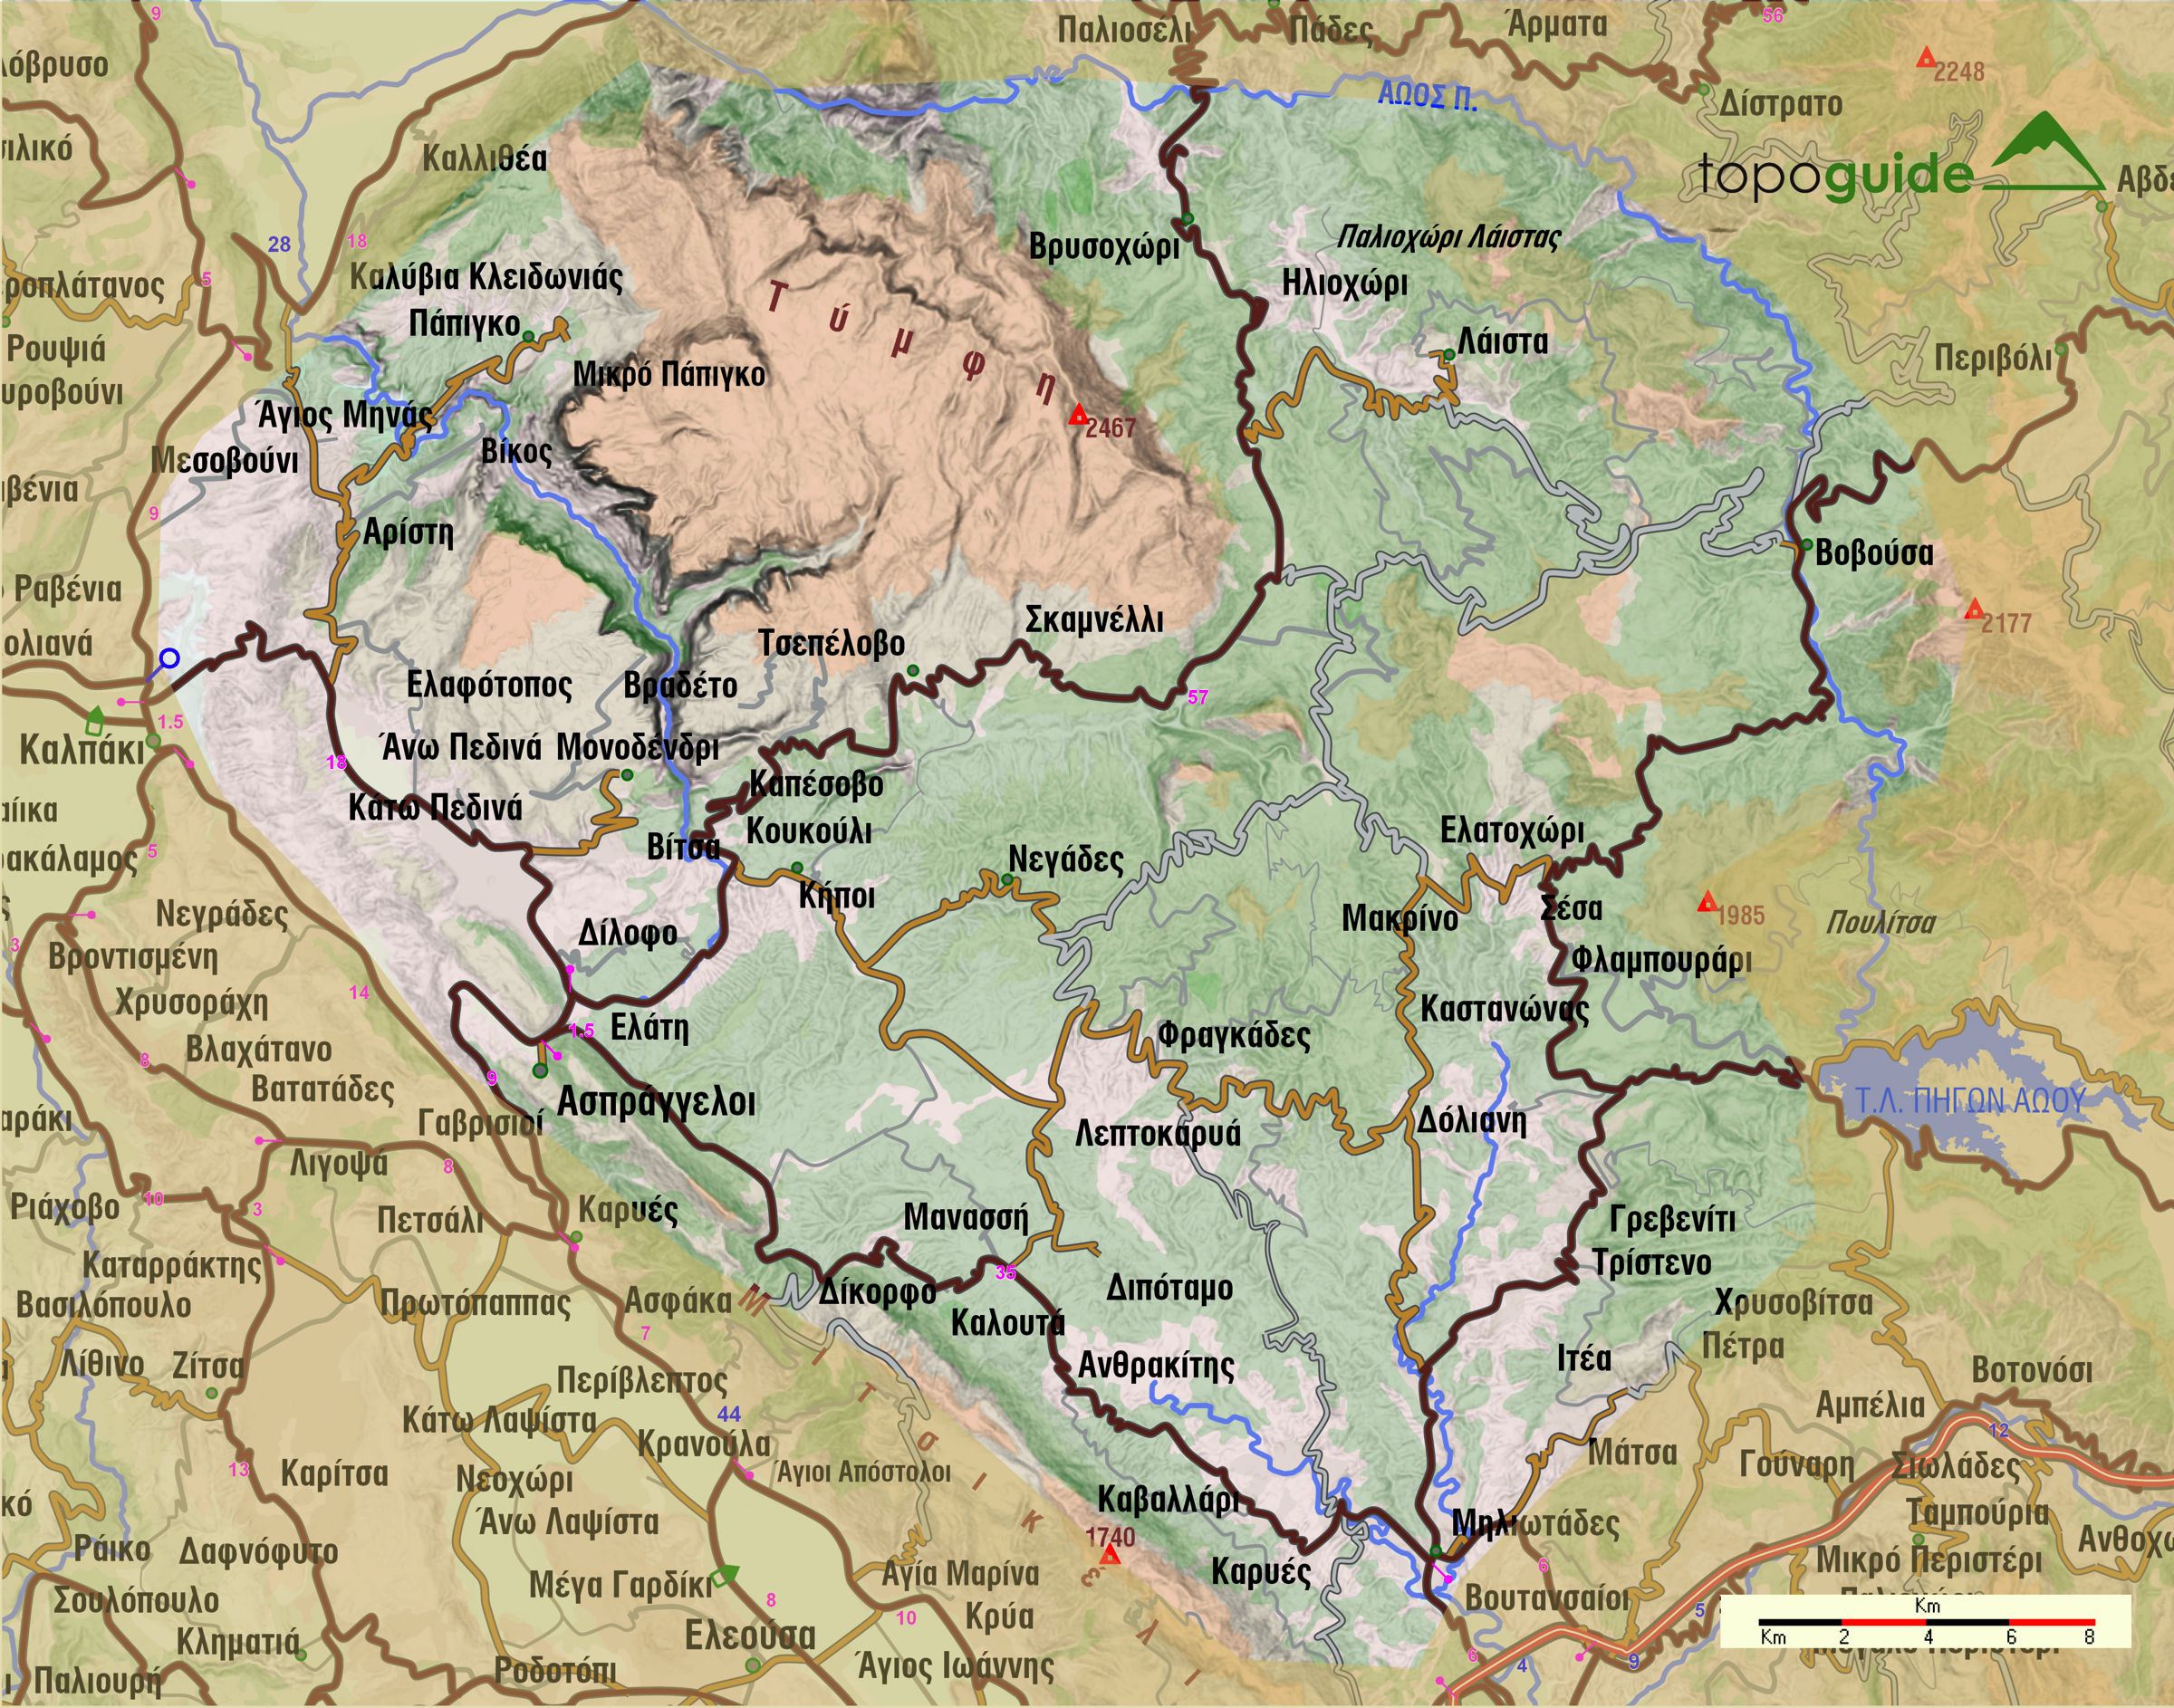 Γεωγραφία του Ζαγορίου: Γεωφυσικός χάρτης του Ζαγορίου με το σύστημα κατοίκησης